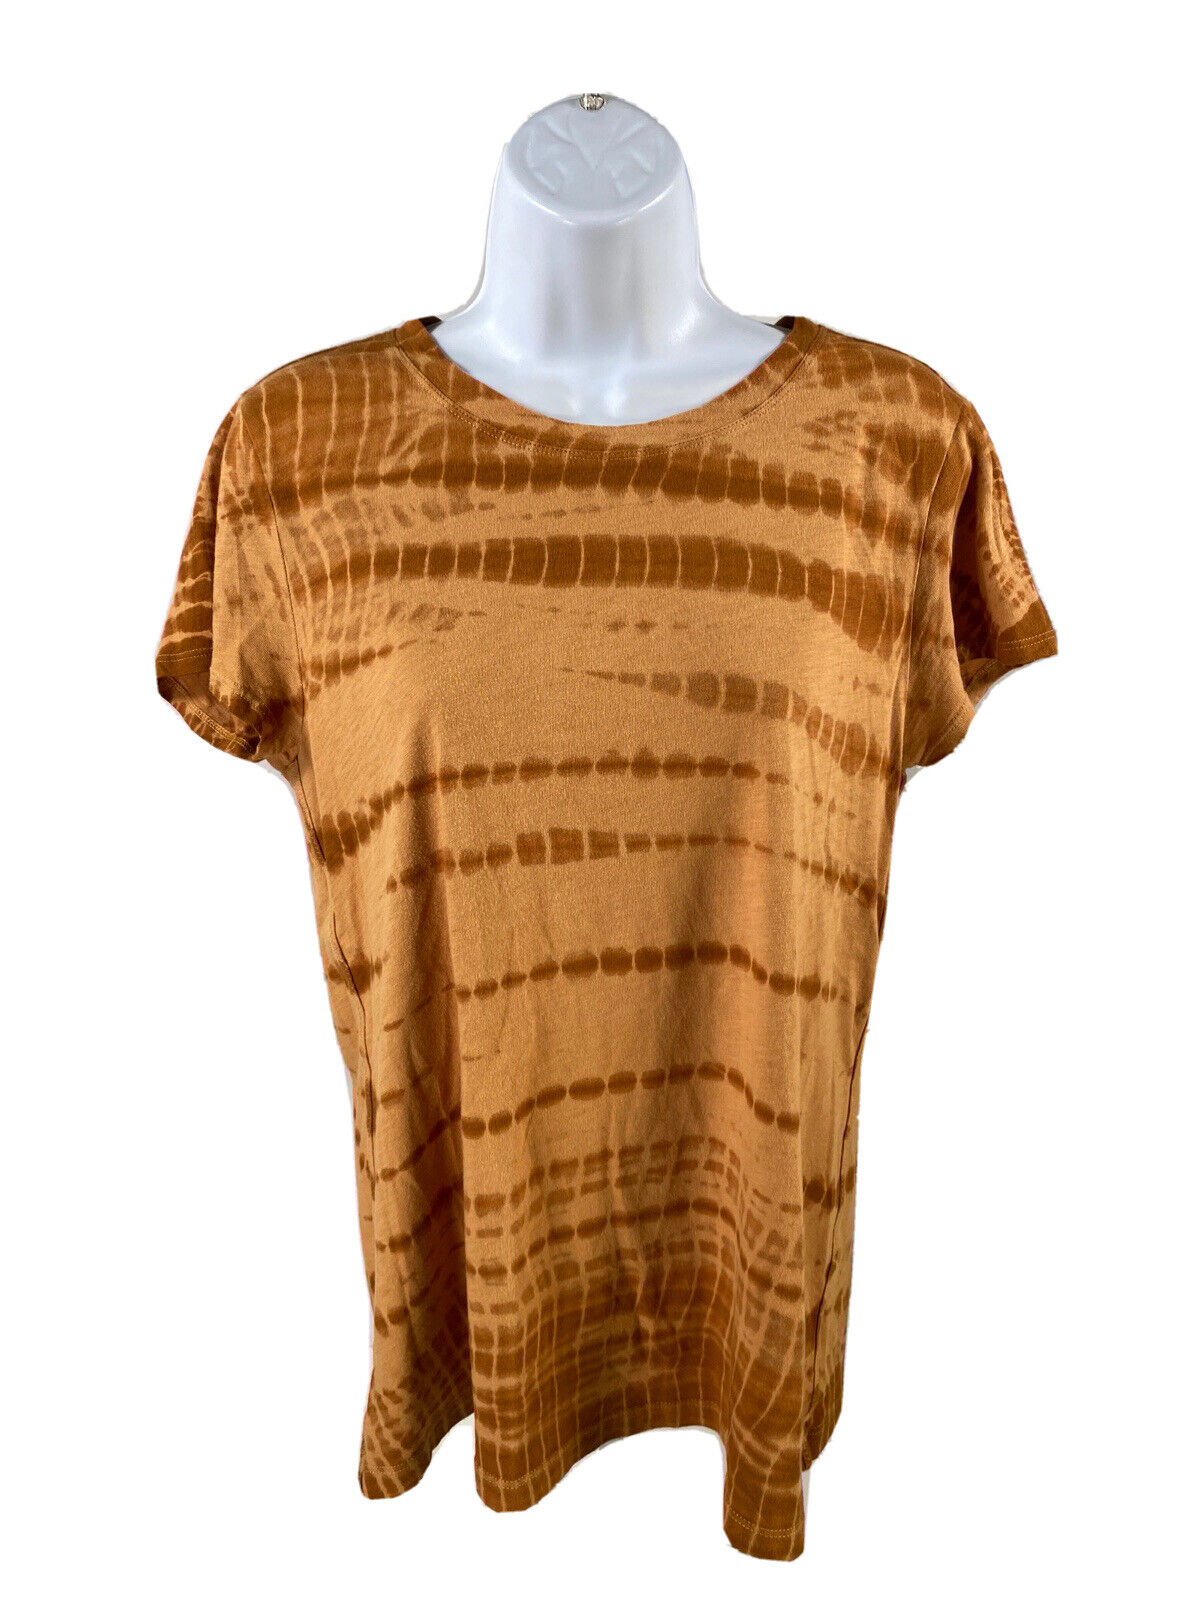 Athleta Women's Brown/Tan Tie Dye Daily Crewneck T-Shirt - M